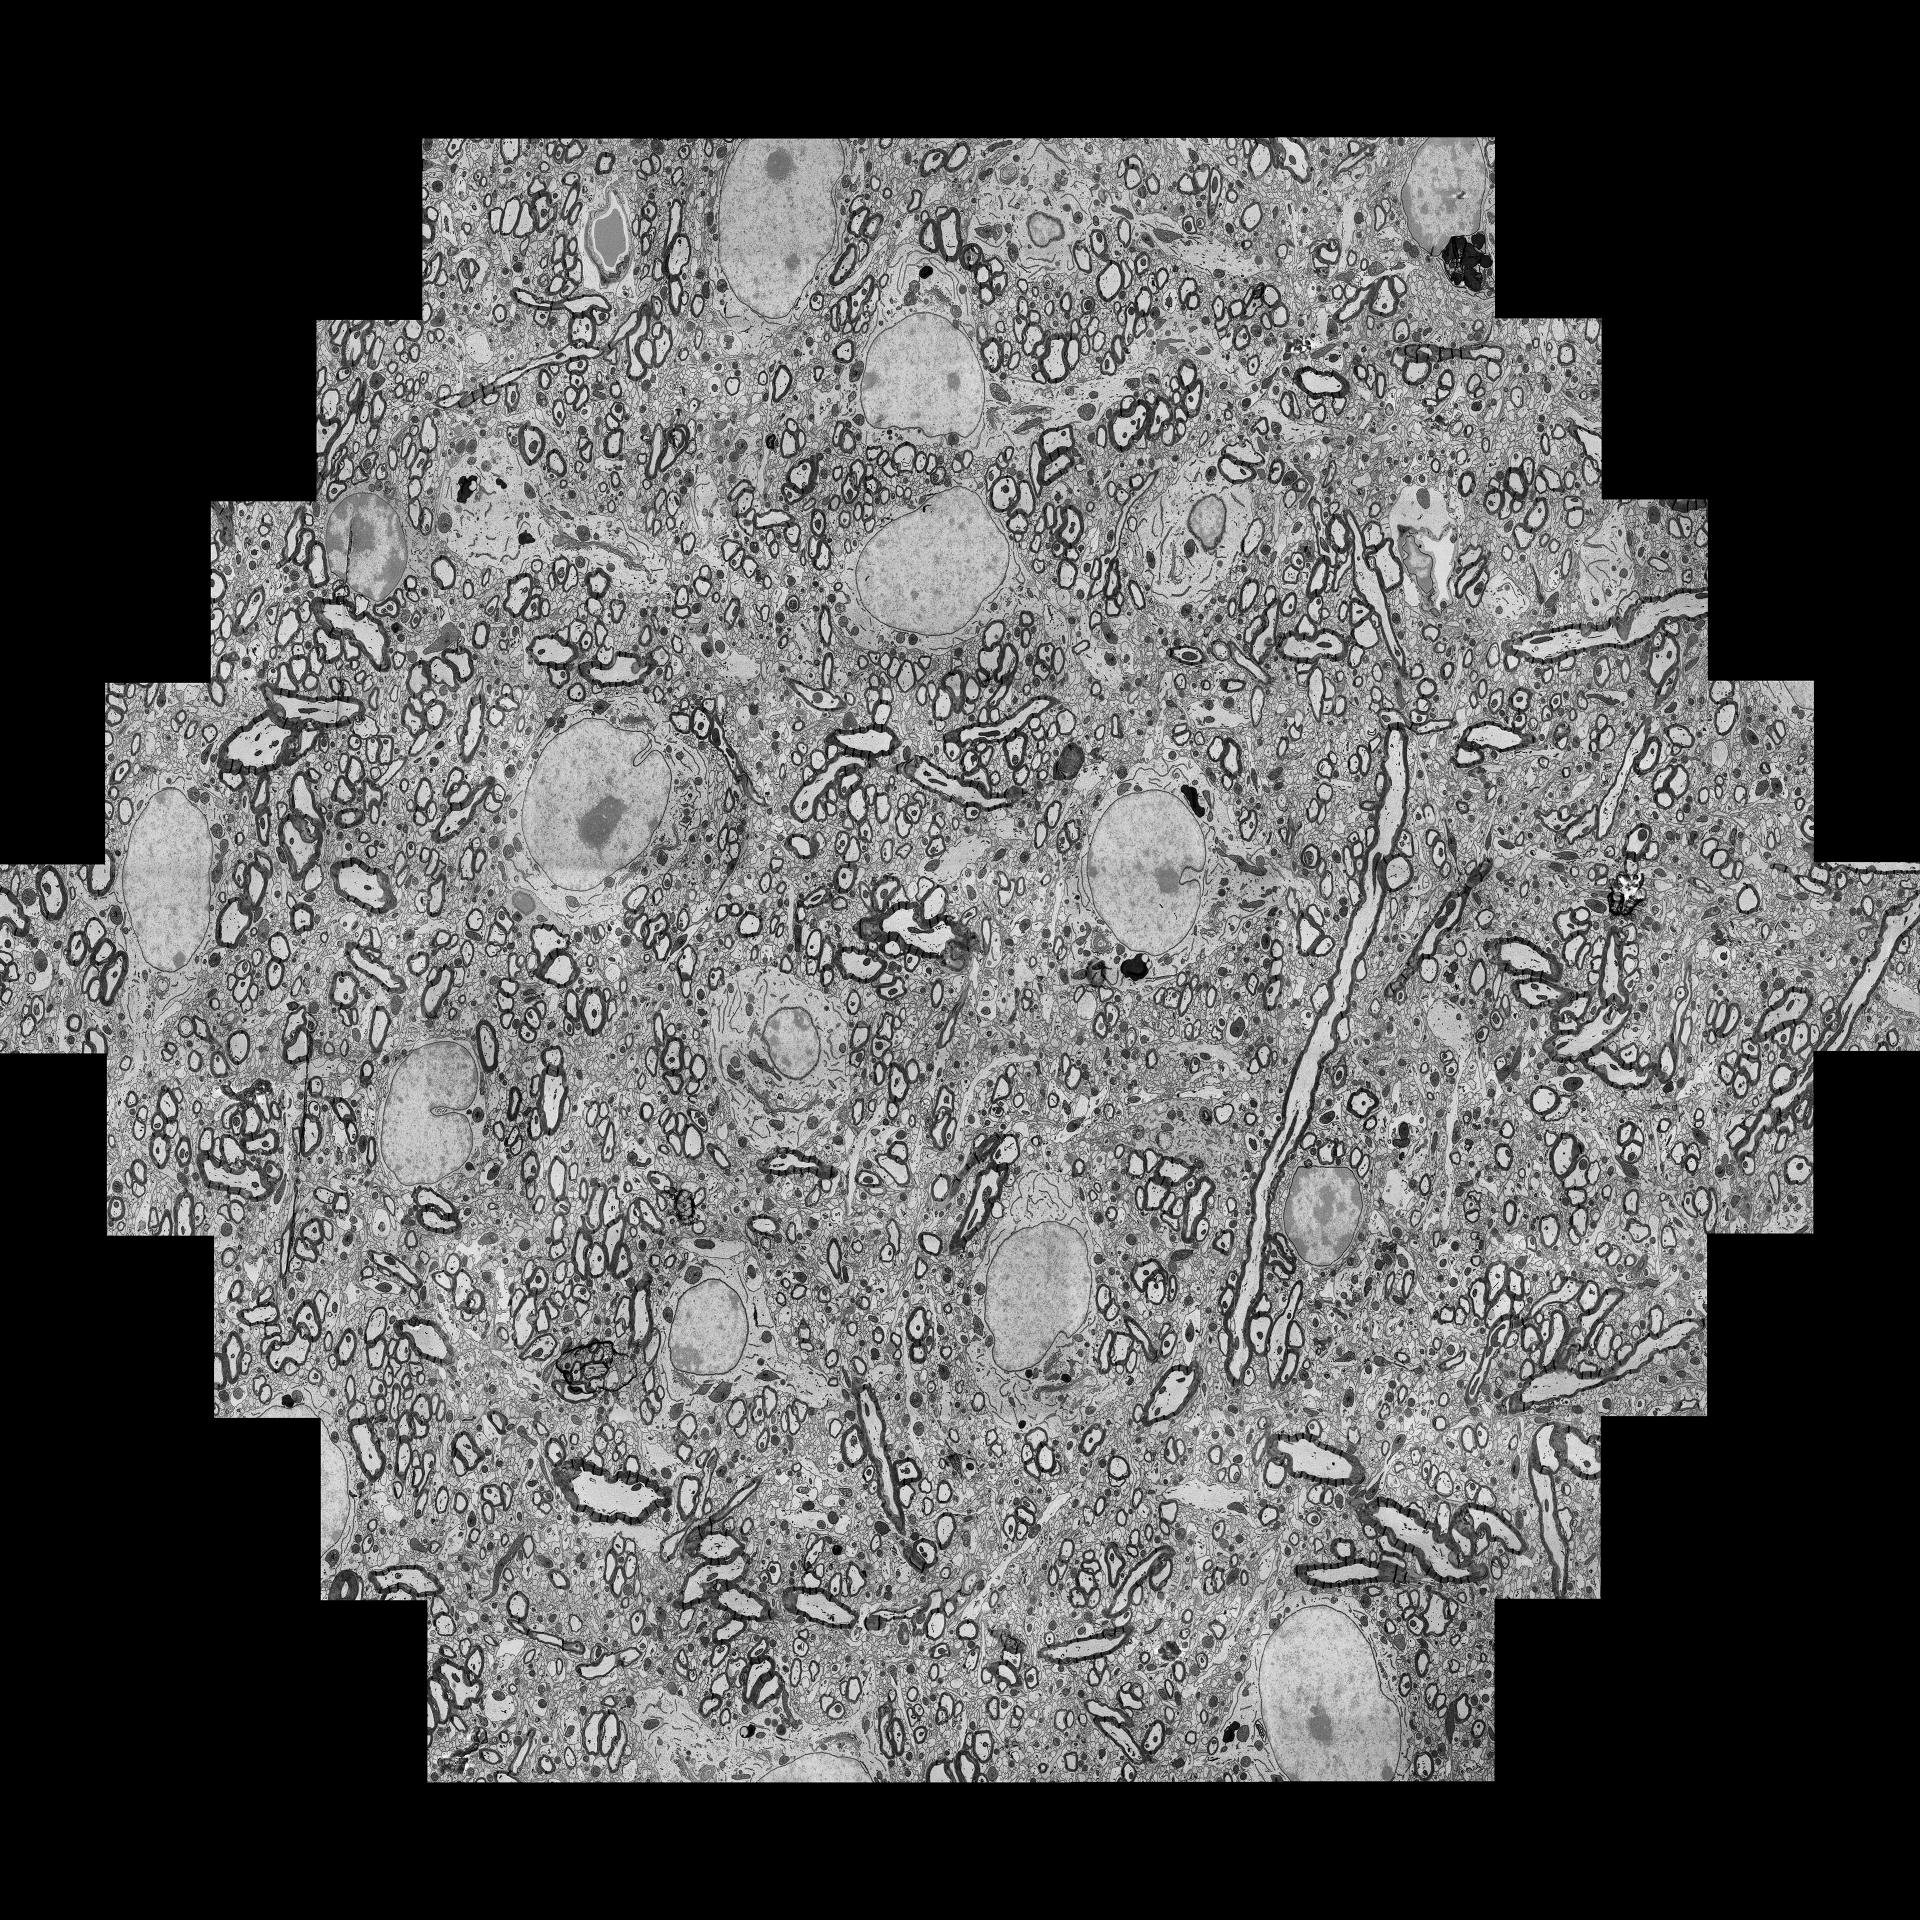 Beispiel für ein einzelnes mFoV, bestehend aus 61 einzelnen Bildkacheln, aufgenommen mit 61 parallelen Elektronenstrahlen, die von links nach rechts mehr als 100 µm abdecken, wobei die Aufnahme in der Regel nur wenige Sekunden dauert. 